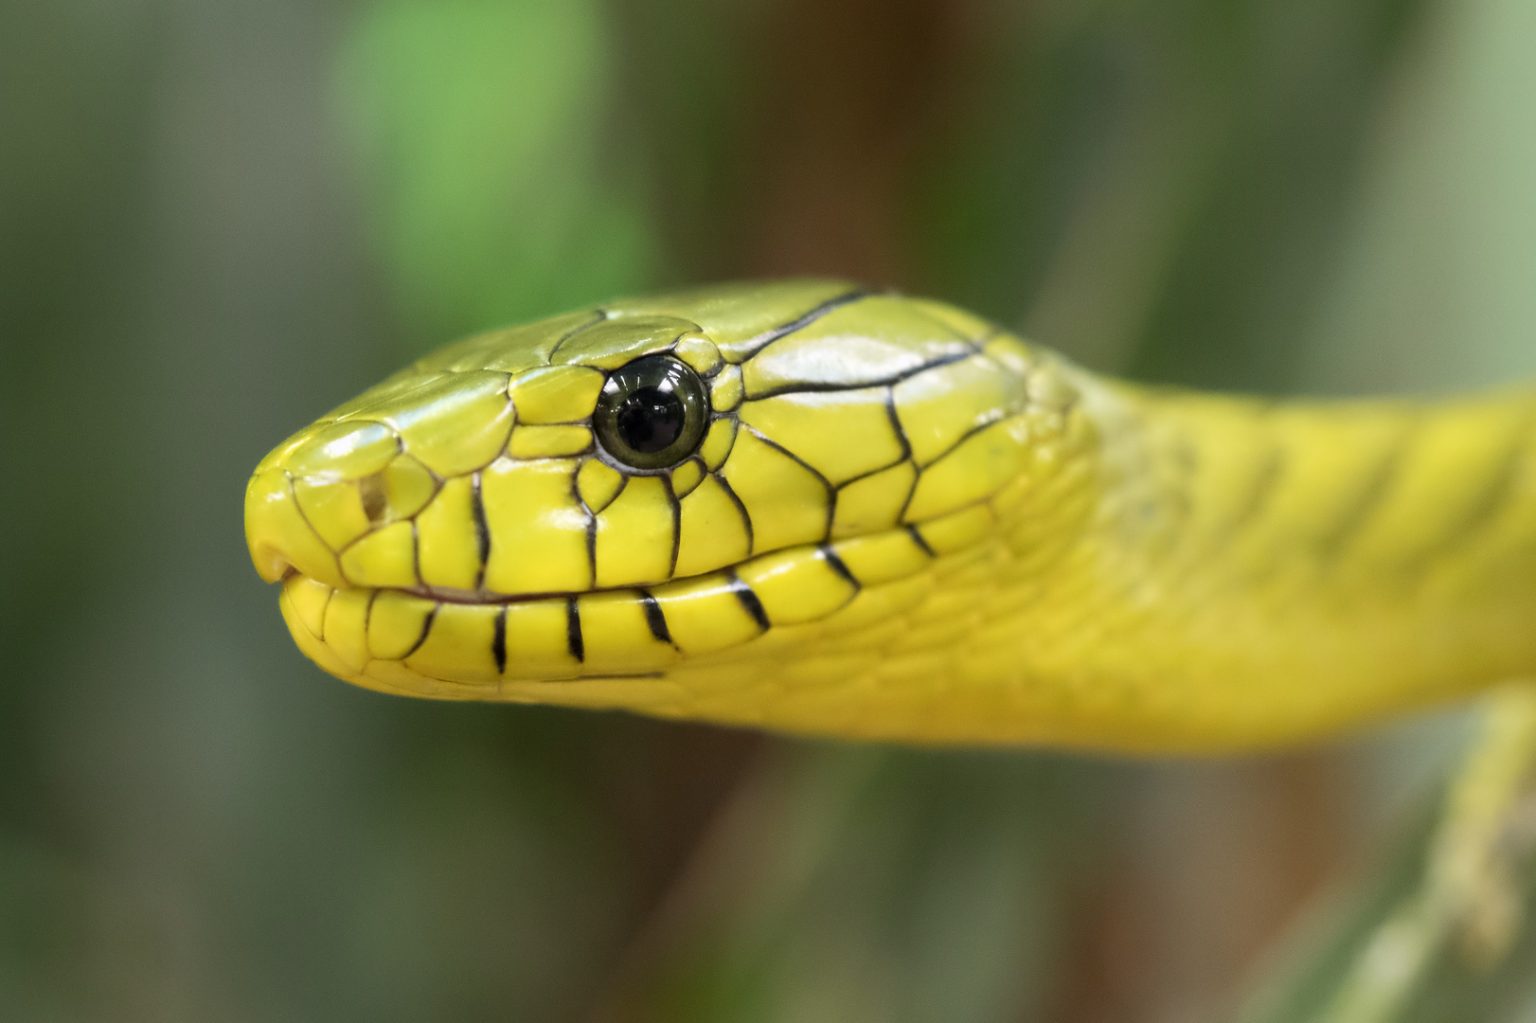 Tổng hợp hình ảnh về loài rắn đẹp nhất - [Kích thước hình ảnh: 1536x1023 px]